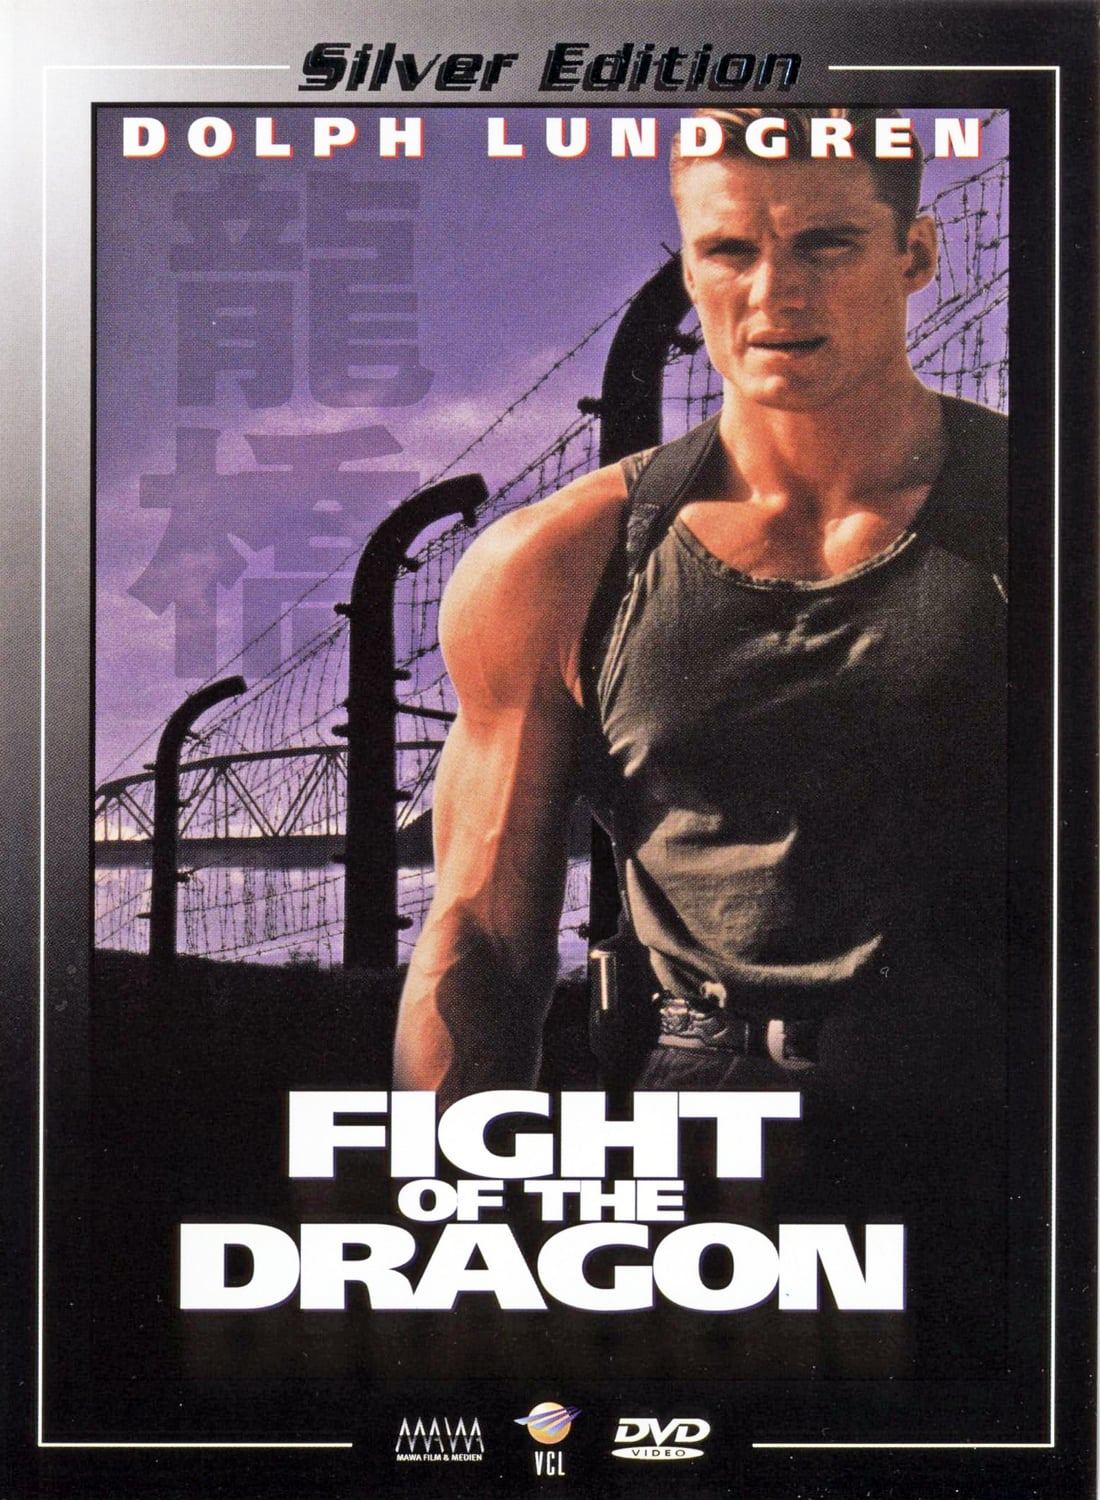 Plakat von "Fight of the Dragon"